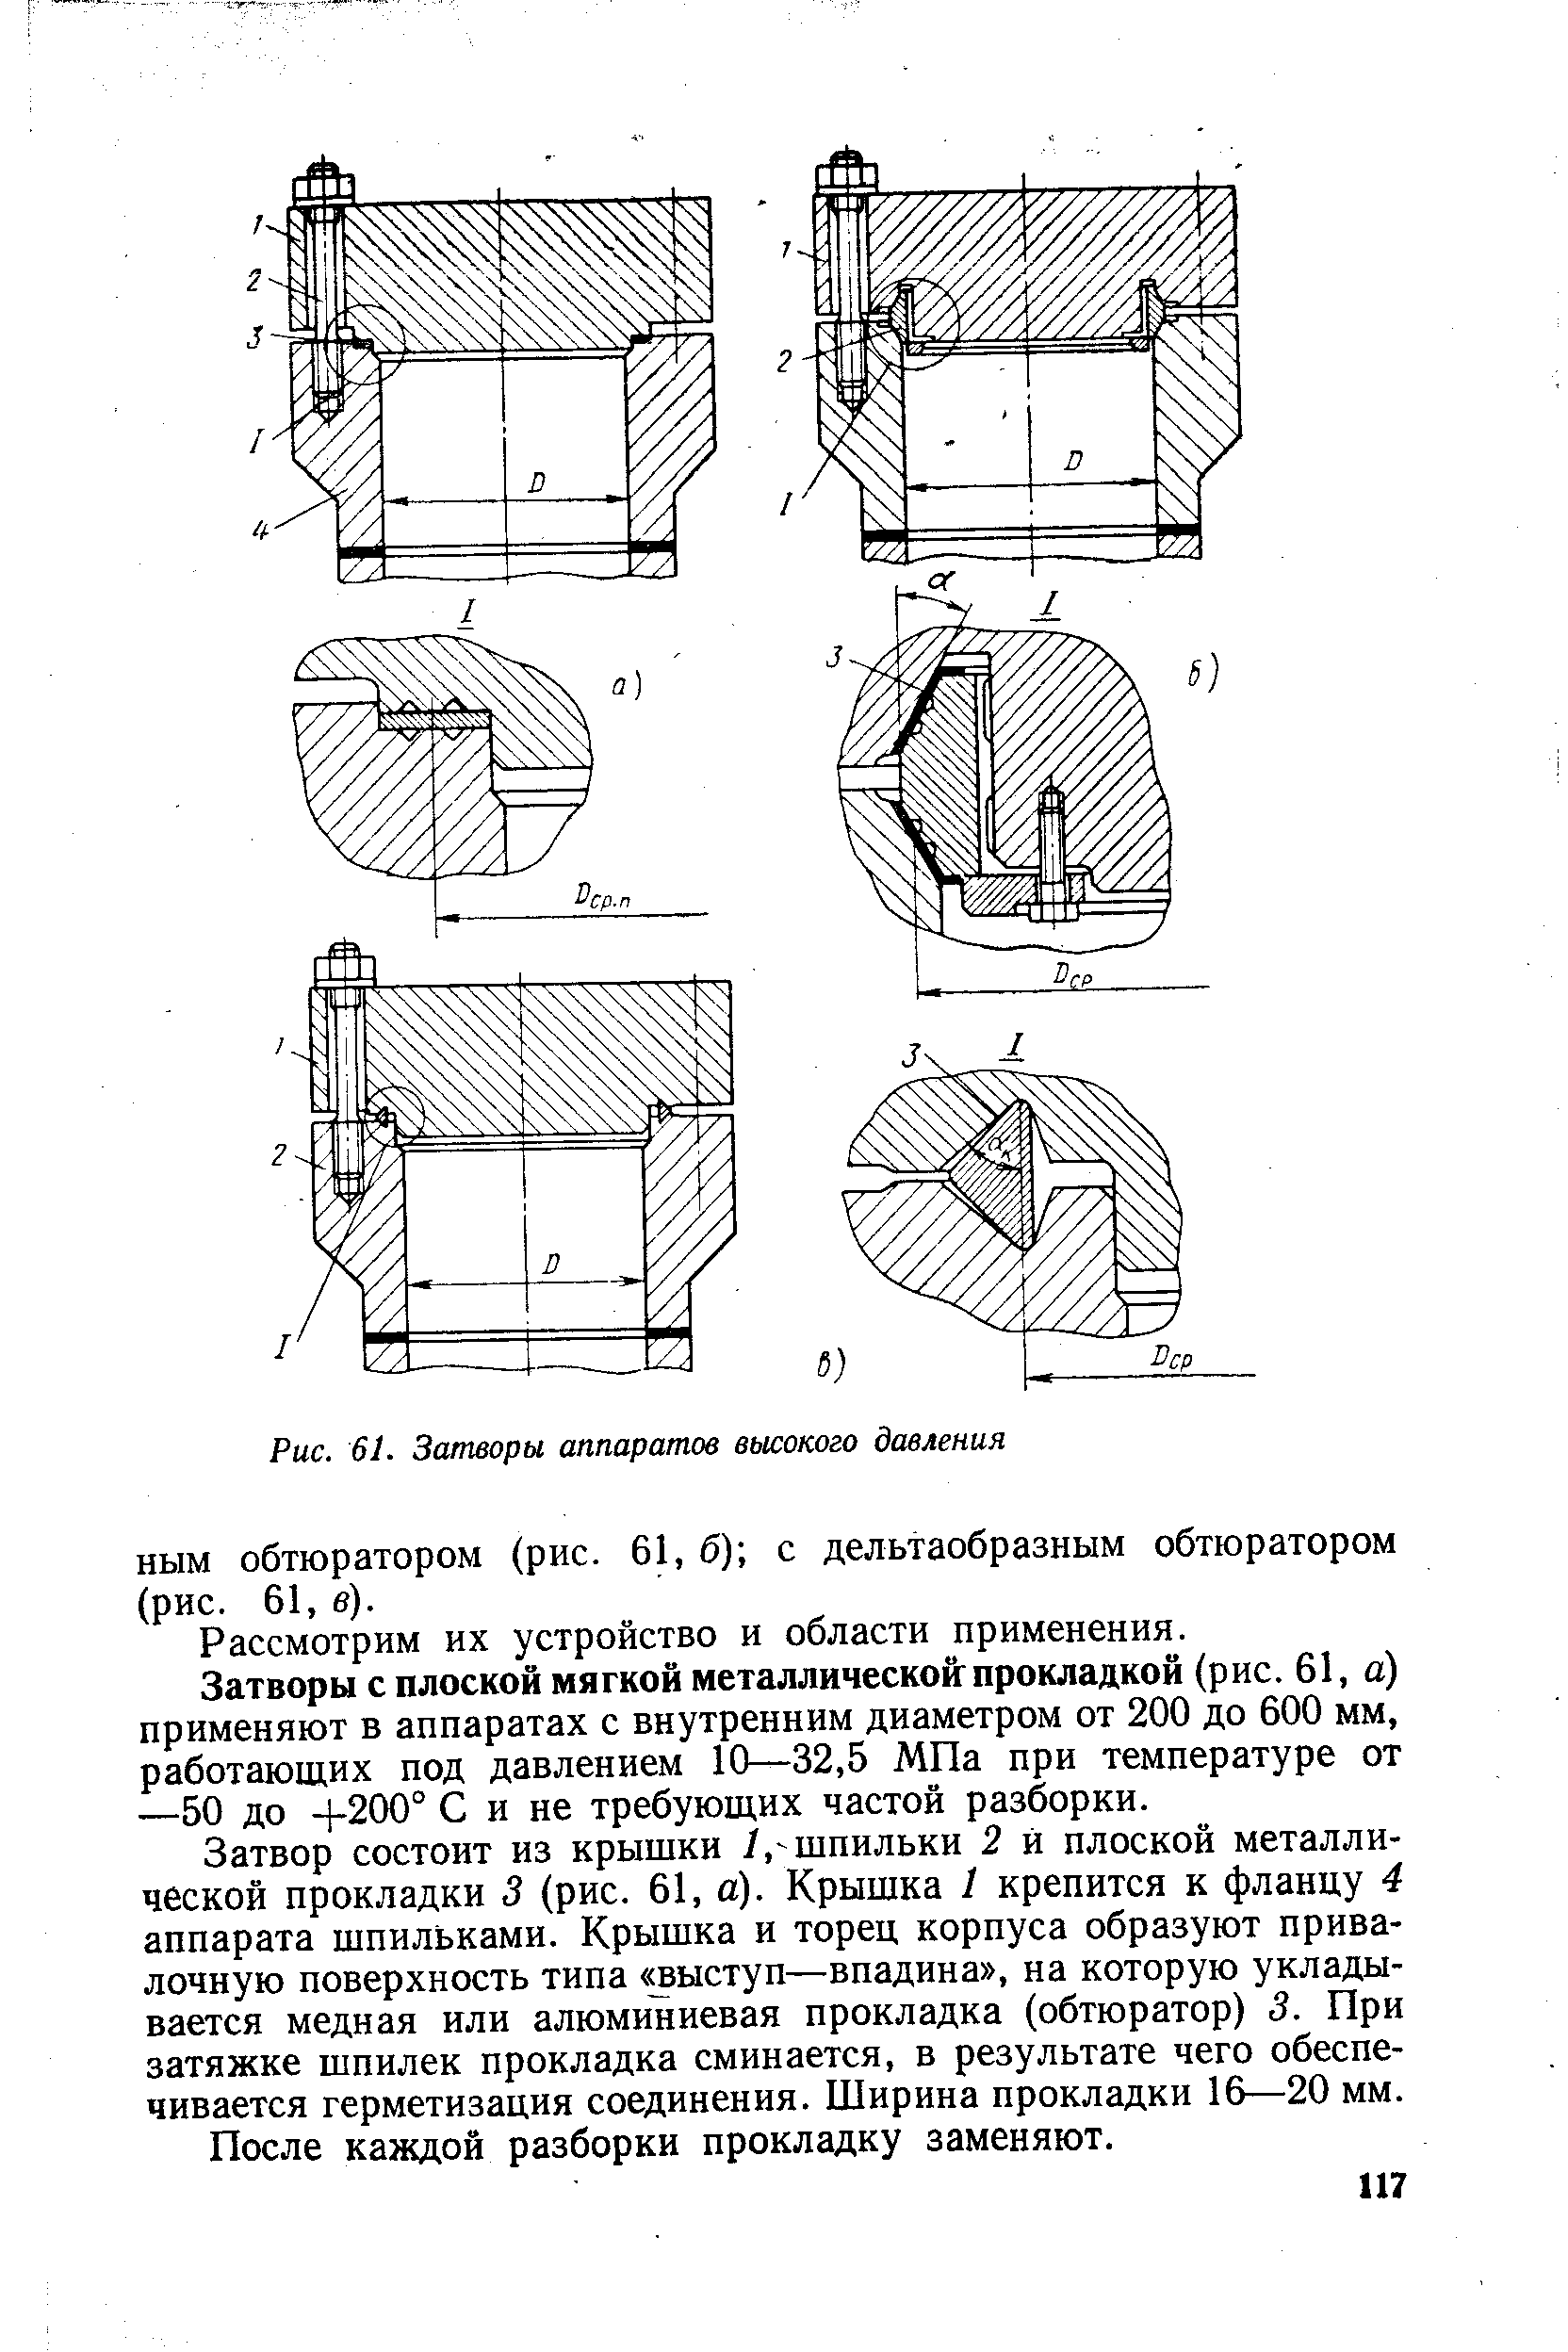 НЫМ обтюратором (рис. 61, б) с дельтаобразным обтюратором (рис. 61, в).